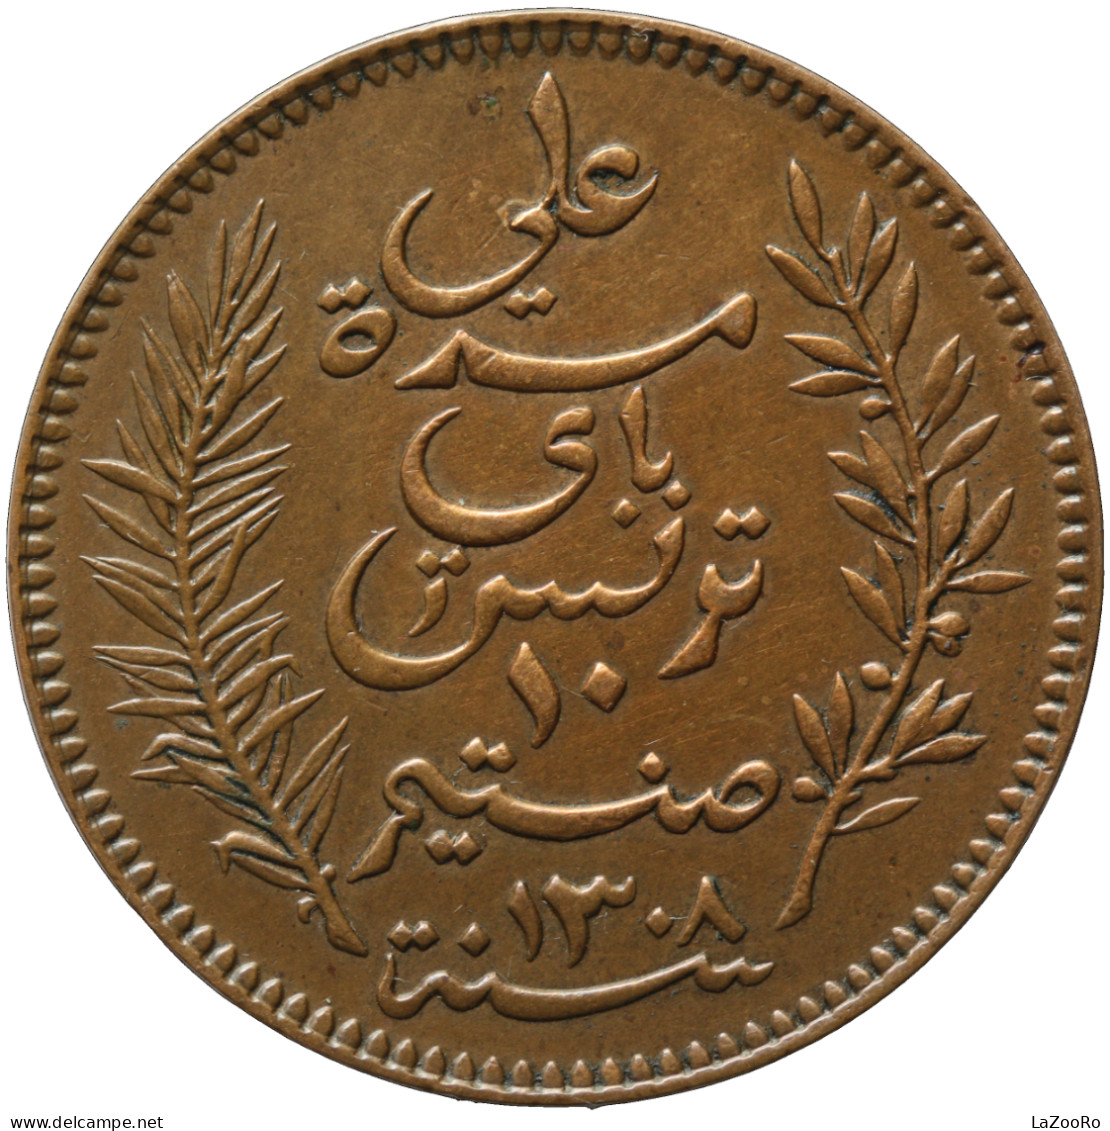 LaZooRo: Tunisia 10 Centimes 1891 XF - Tunisia